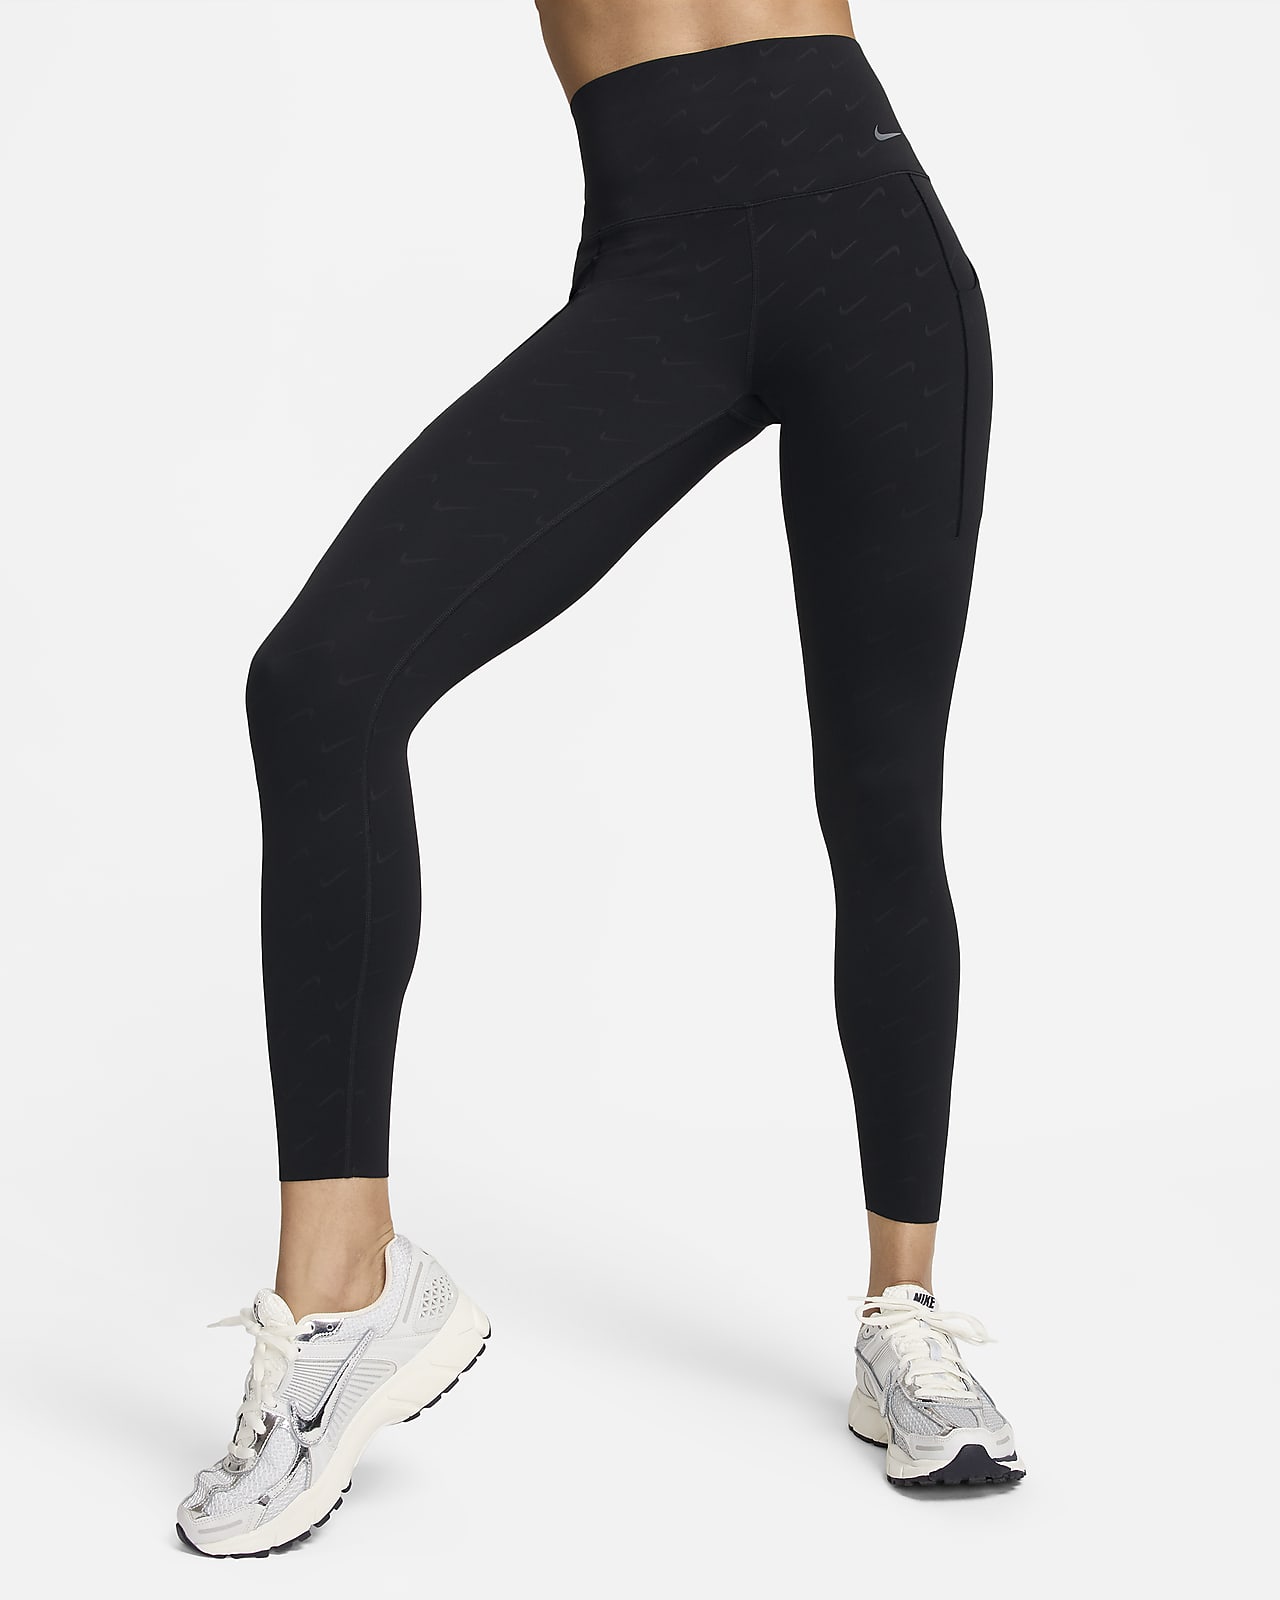 Nike One Women's High-Waisted 7/8 Allover Print Leggings, Black